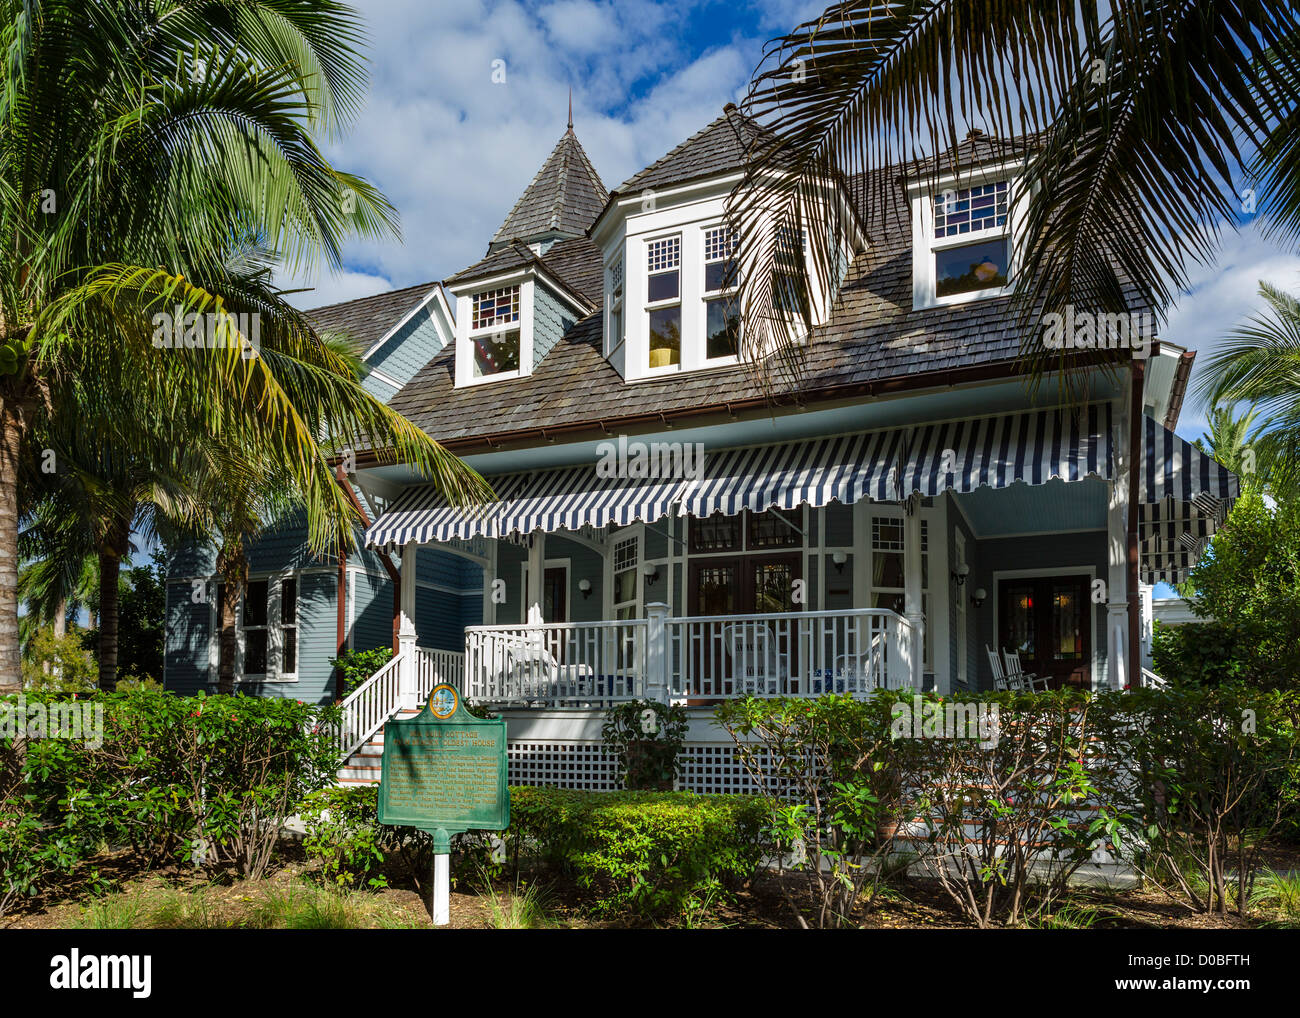 Sea Gull Cottage, la plus ancienne maison de Palm Beach, à proximité de la Musée Flagler, Palm Beach, Treasure Coast, Florida, USA Banque D'Images